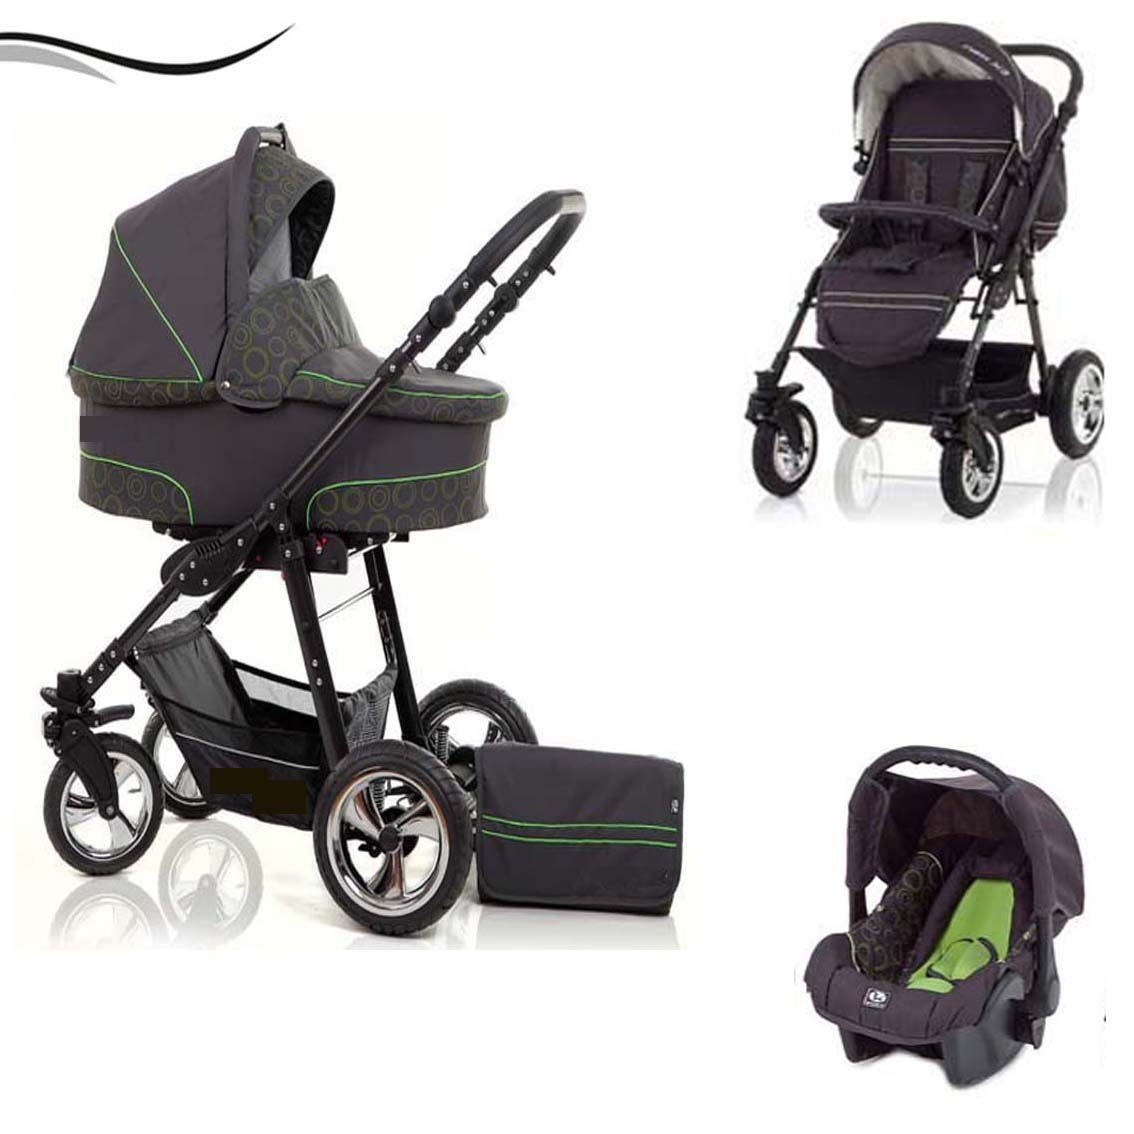 babies-on-wheels Kombi-Kinderwagen City Star 3 in 1 inkl. Autositz - 16 Teile - von Geburt bis 4 Jahre in 16 Farben Grau-Grün-Dekor